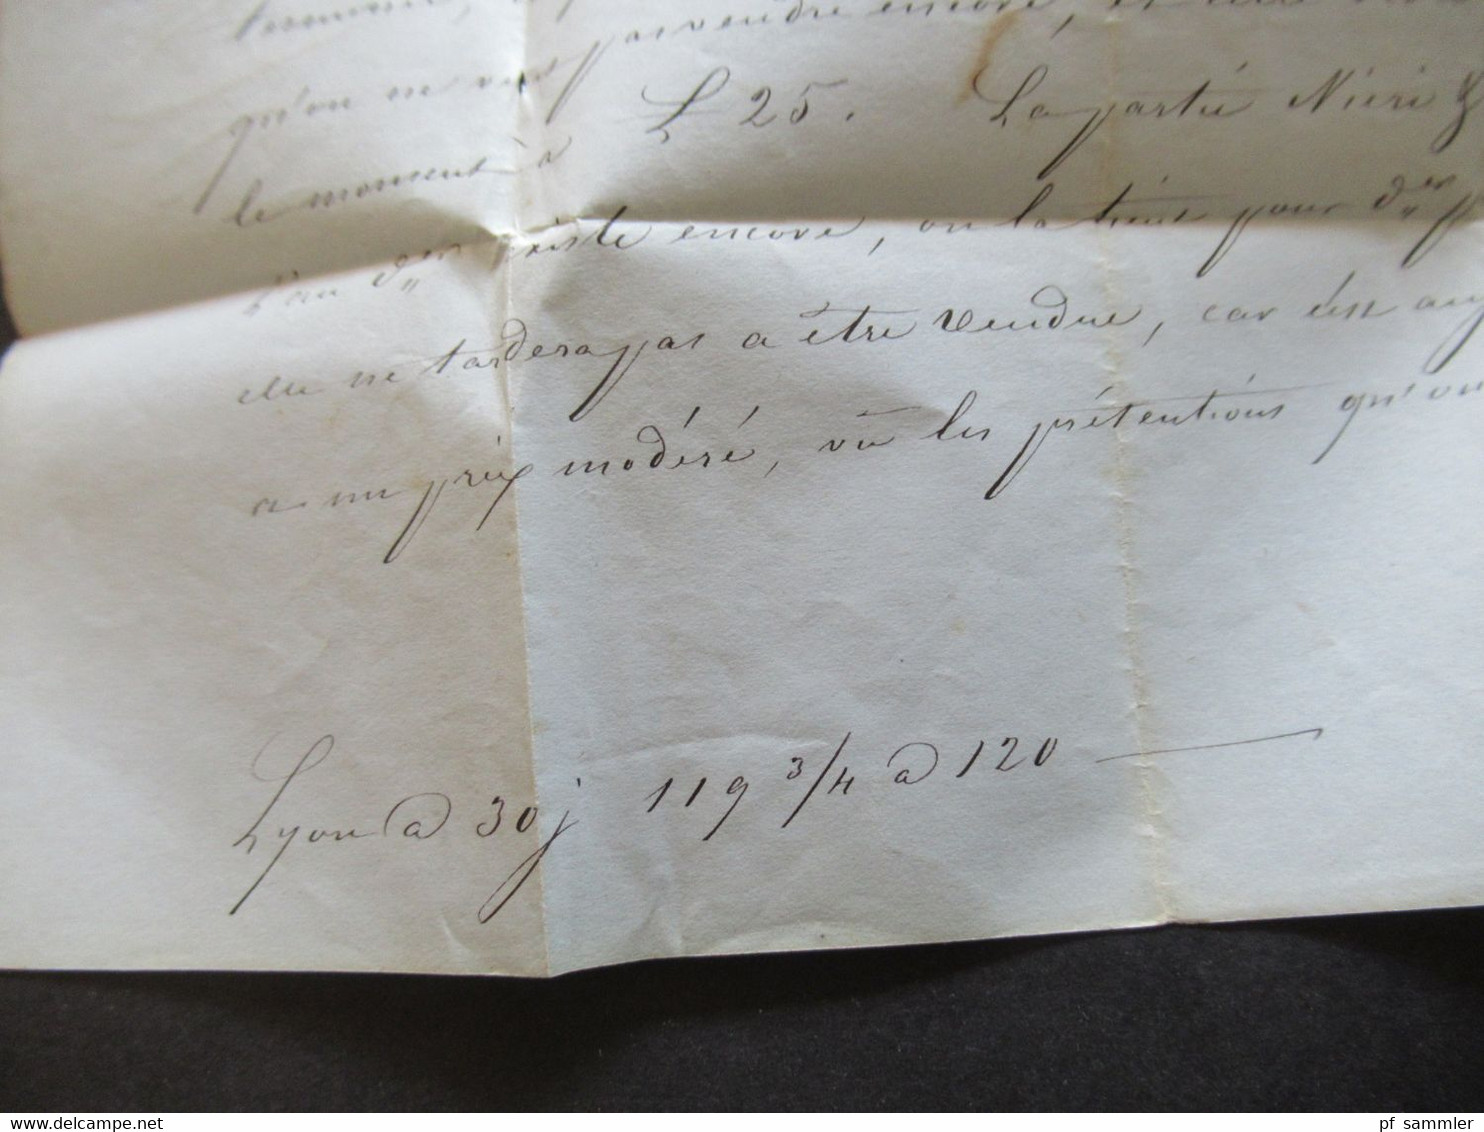 Italien Toskana 19.10.1851 Firenze / Florenz Brief nach Lion geprägtes briefpapier mit Krone Rath Faltbrief mit Inhalt